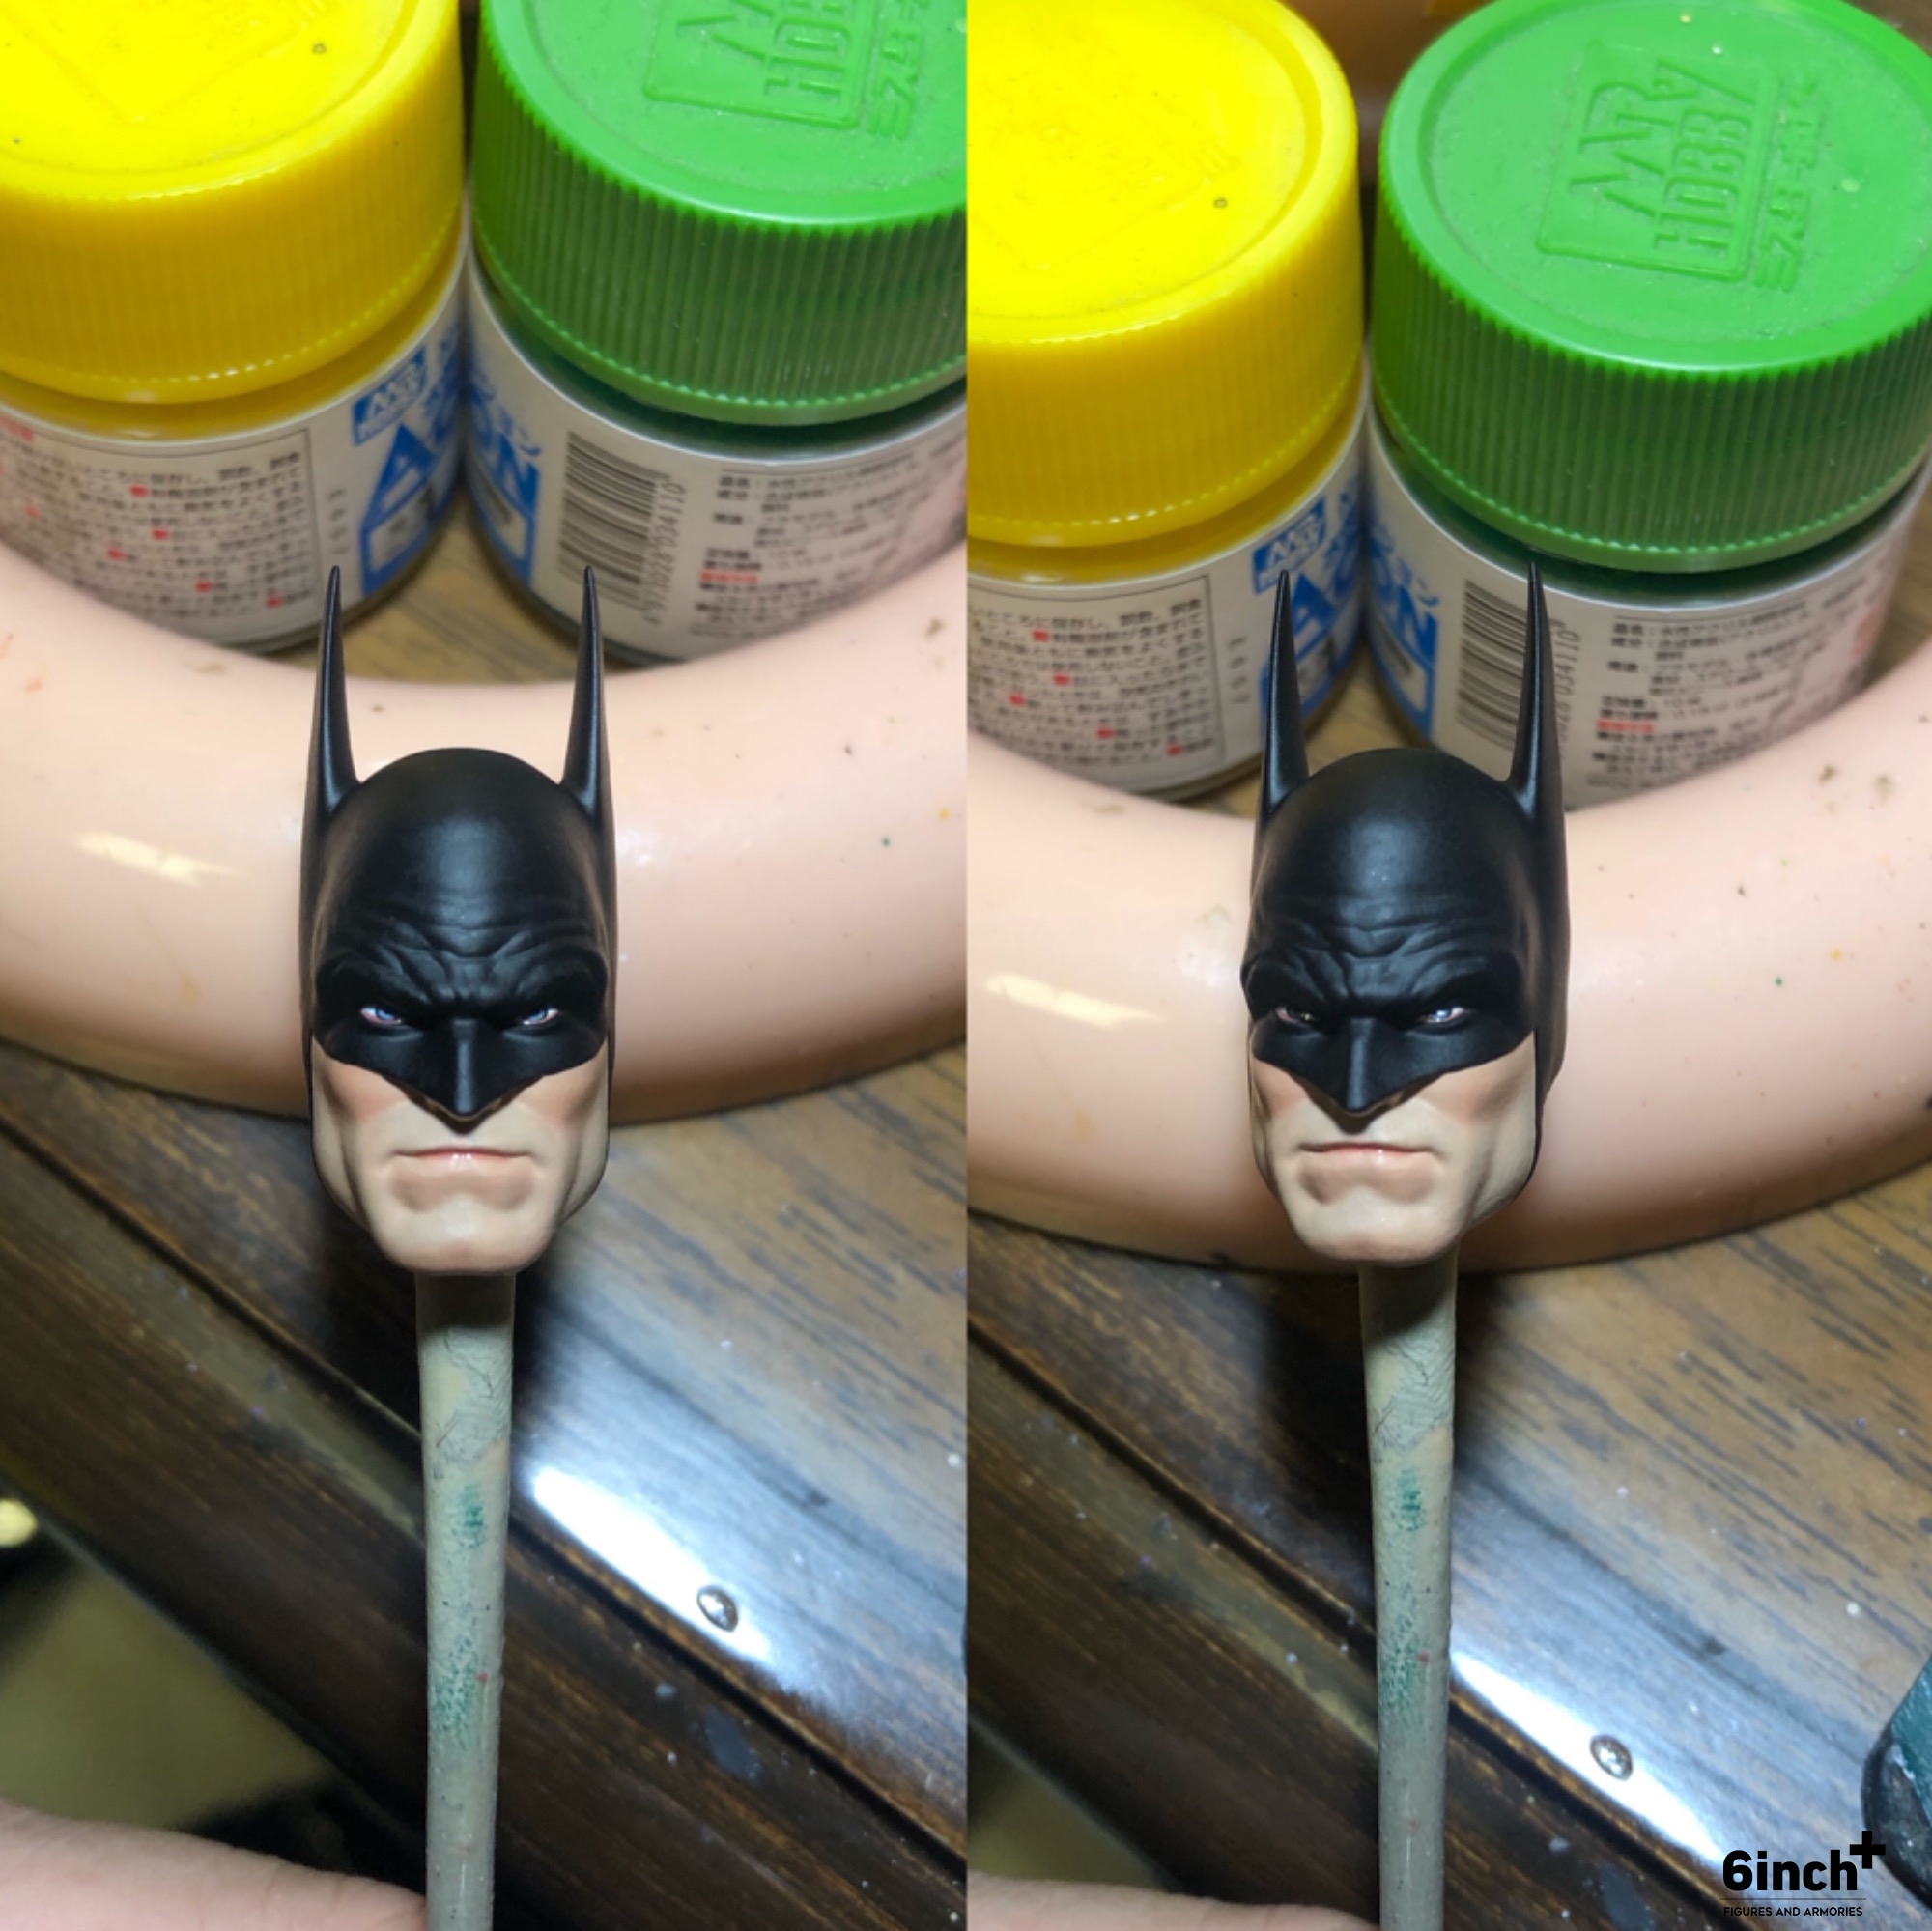 Justice Batman